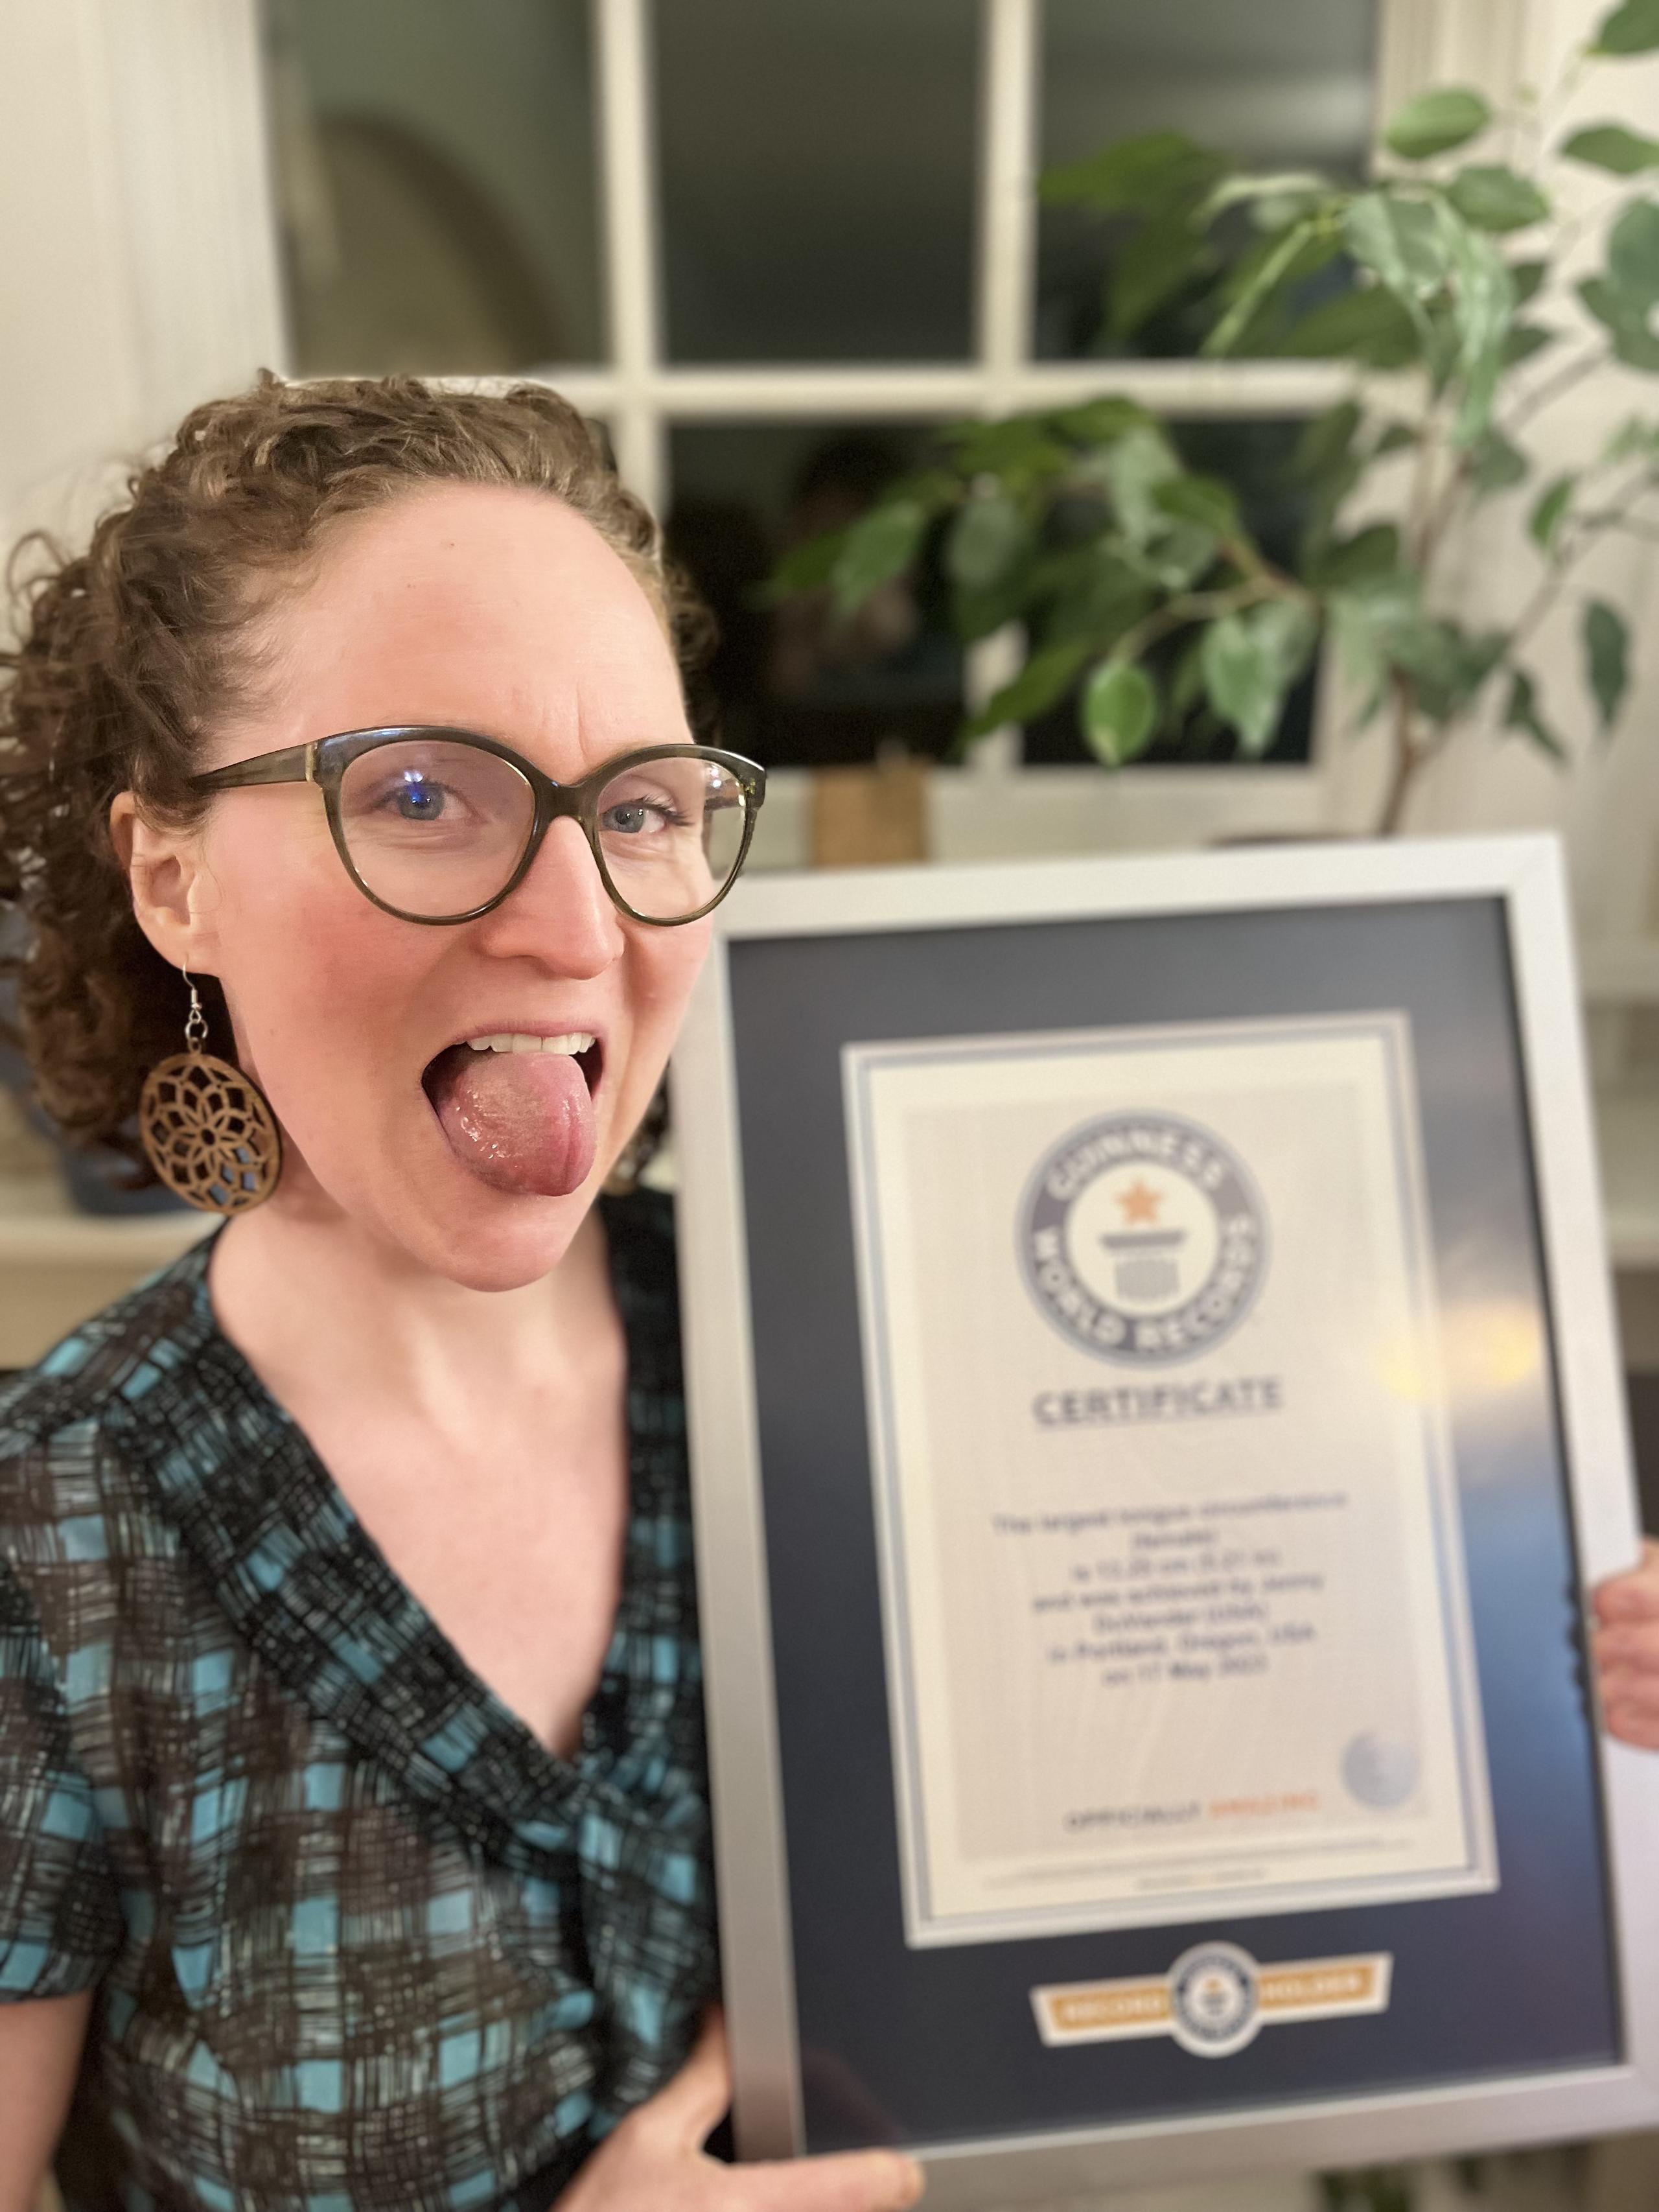 Cuando se le preguntó a Jenny cuál es la mejor parte de tener la circunferencia de la lengua más grande (femenina), respondió: “Bueno, ahora es ser recordista oficial de Guinness World Records”.